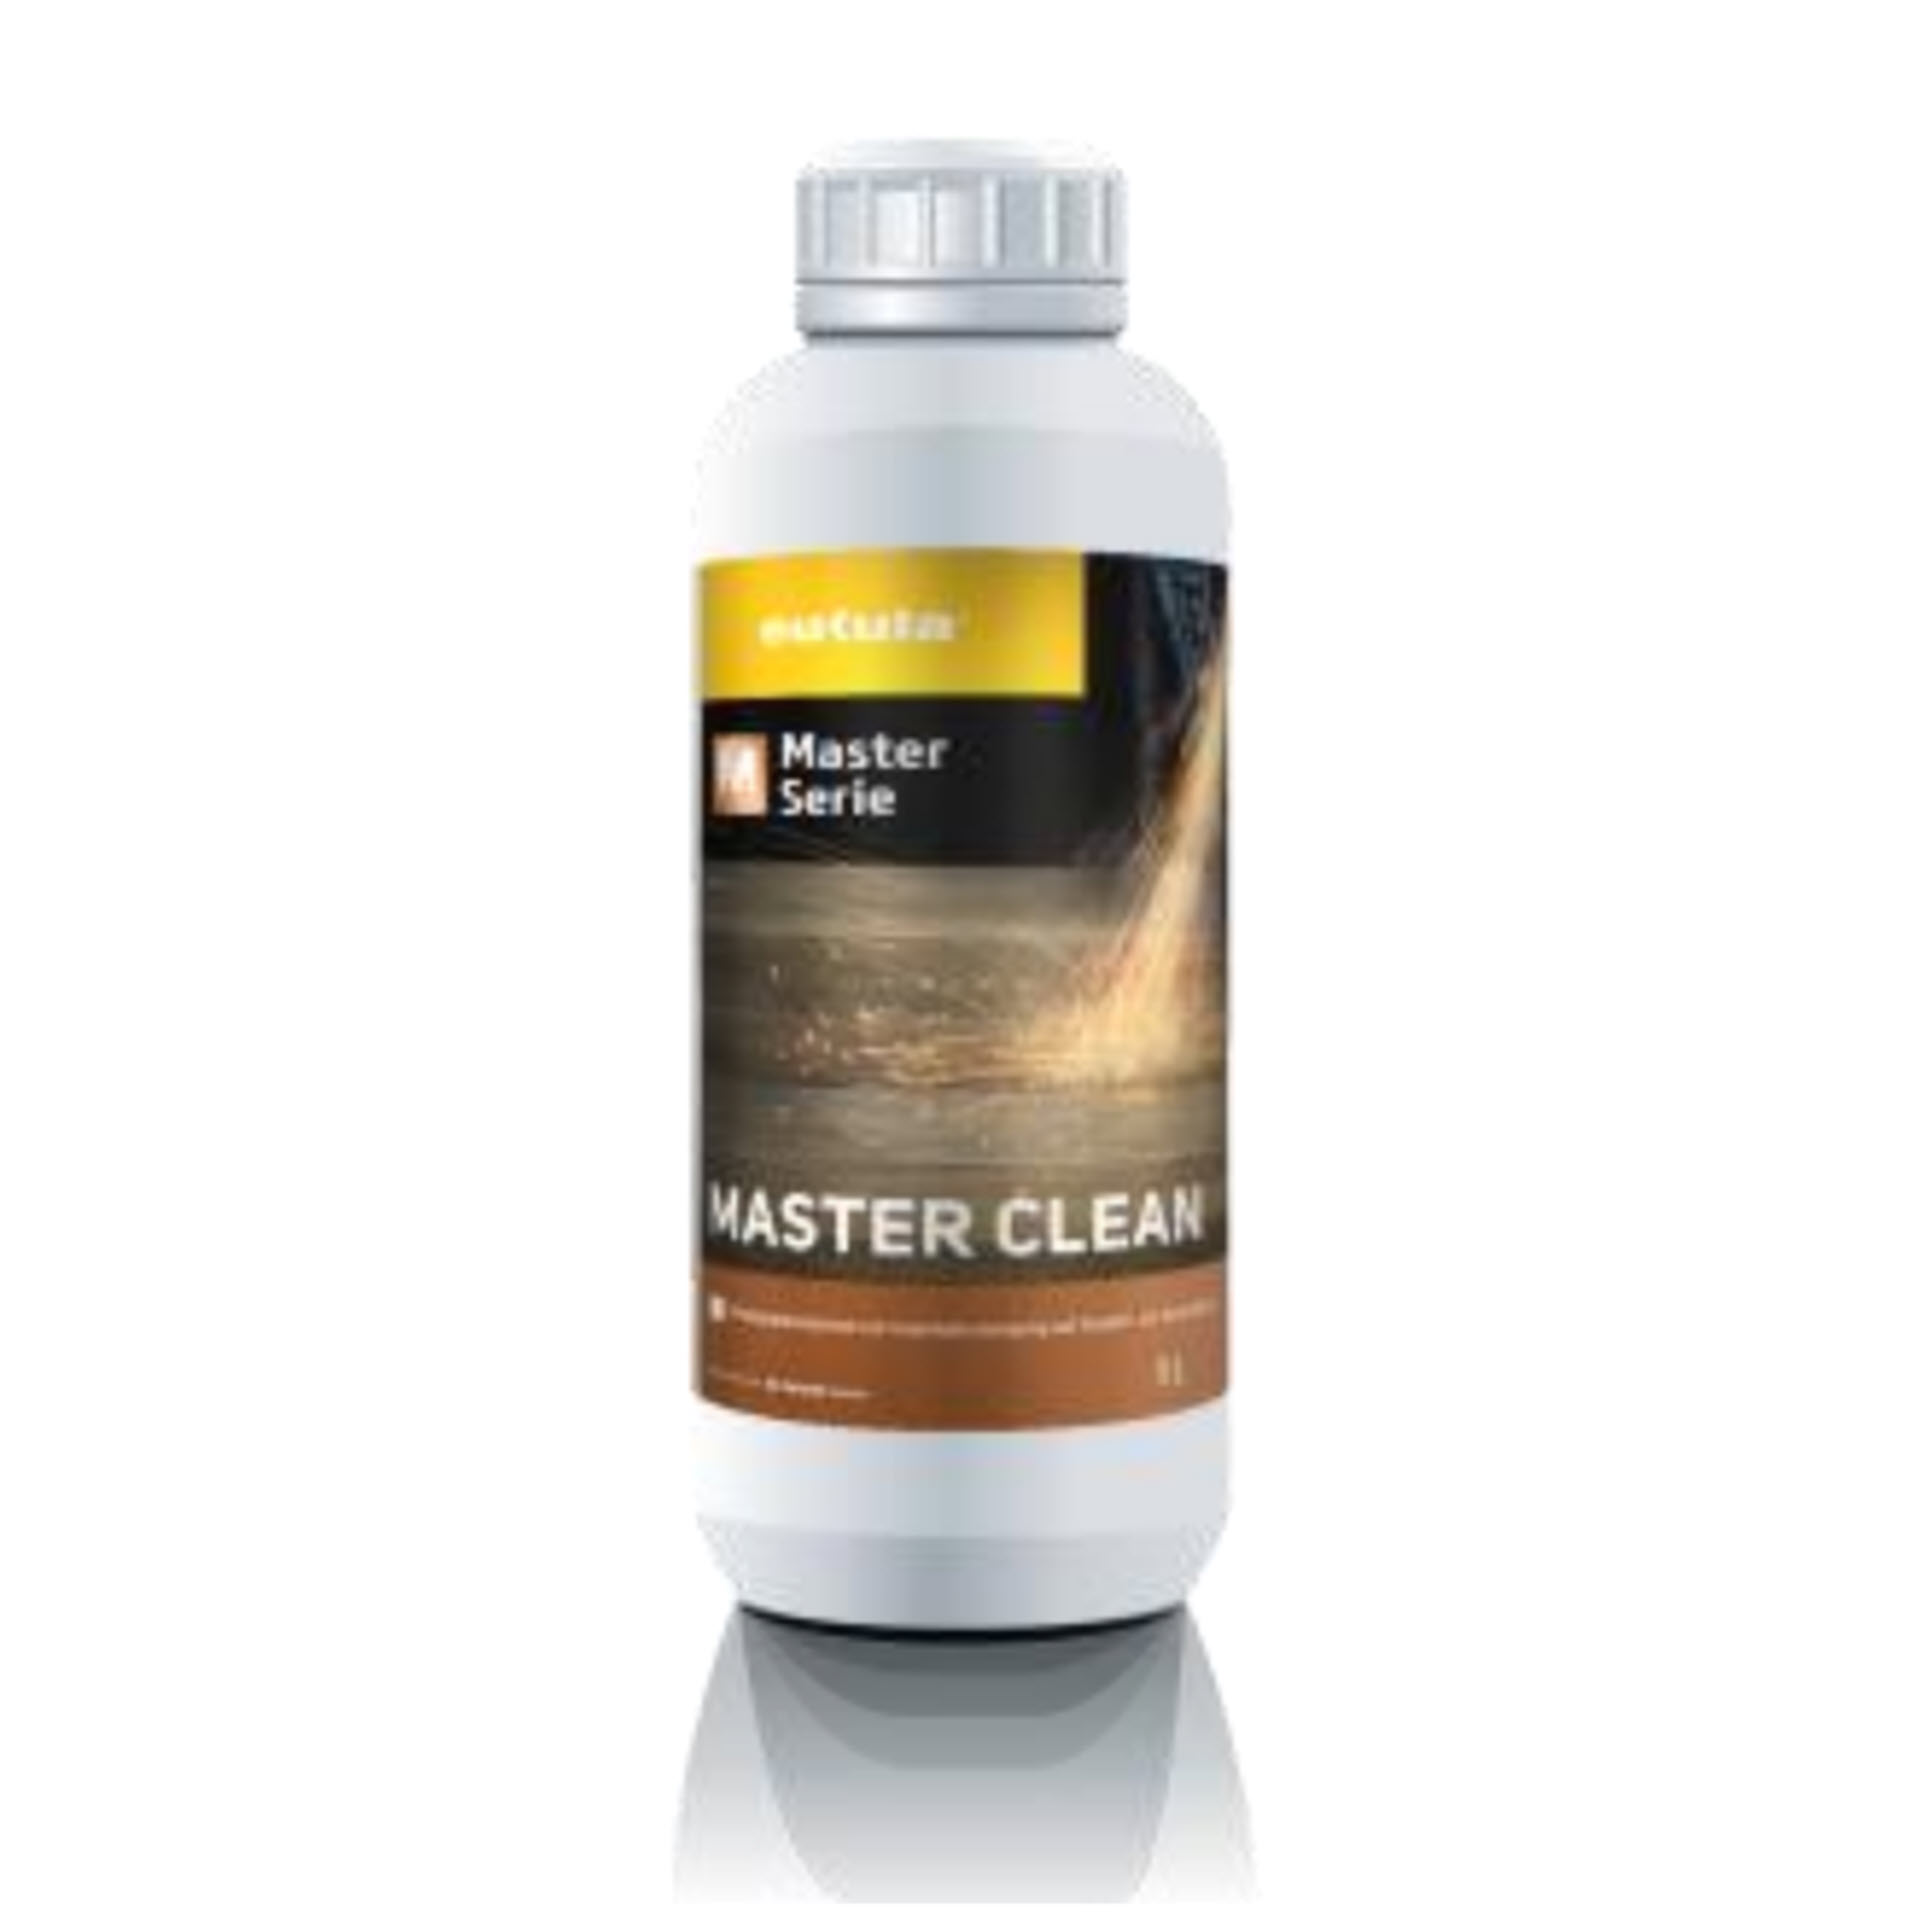 Eukula Master Clean - Unterhaltsreiniger für Holz-, Parkett- und Laminatböden - 1 Liter Rundflasche